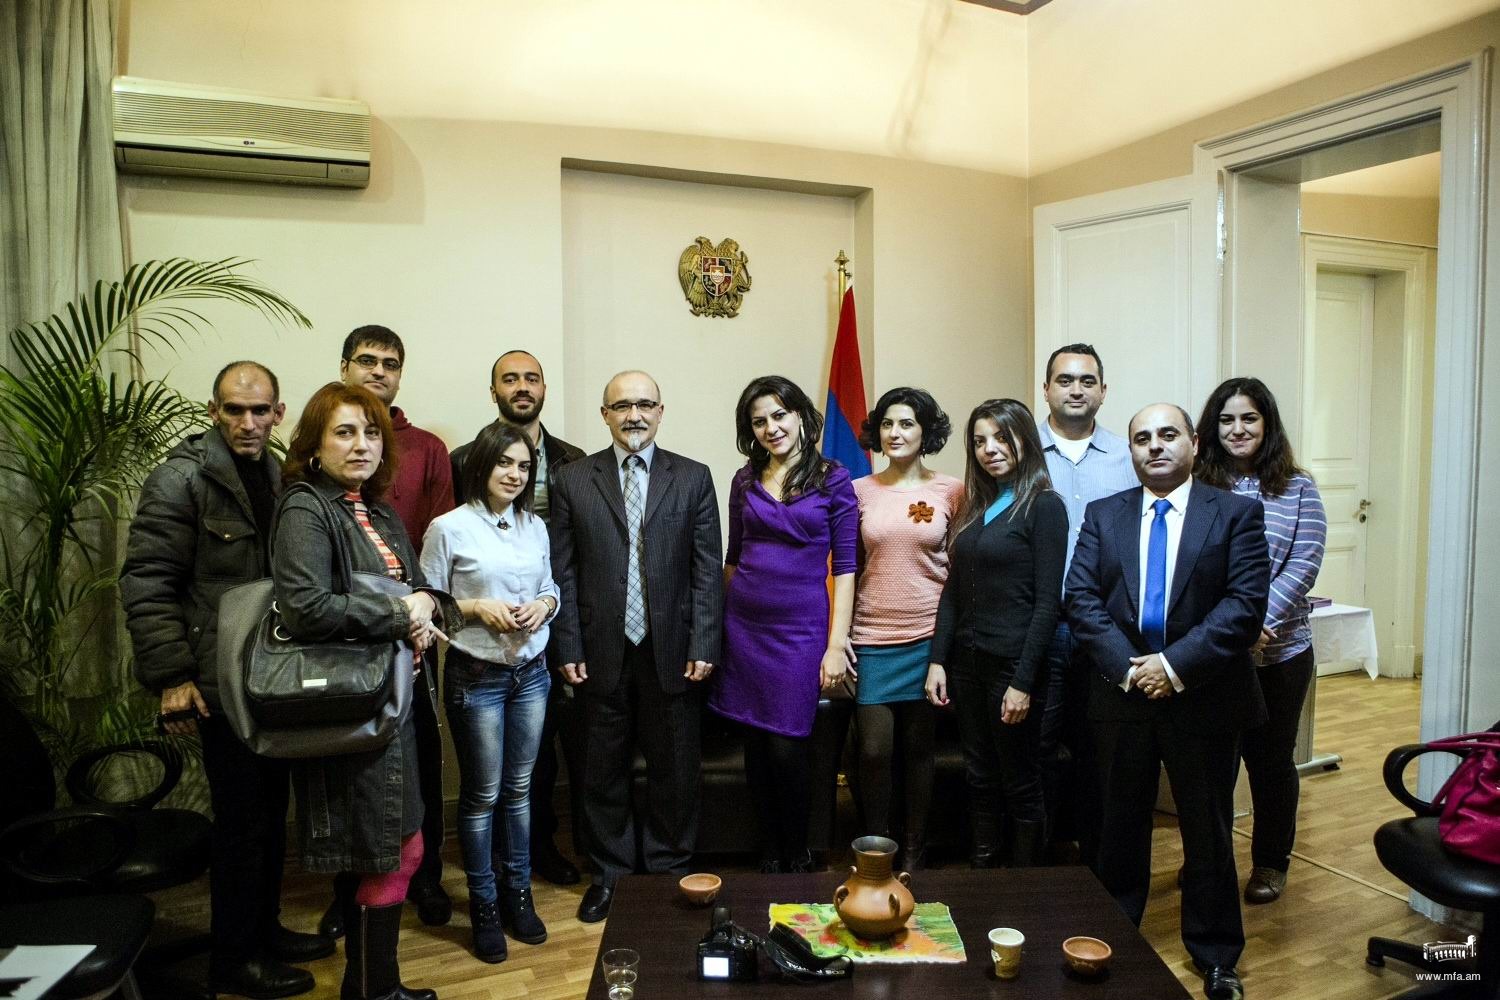 Հանդիպում հայ լրագրողների հետ